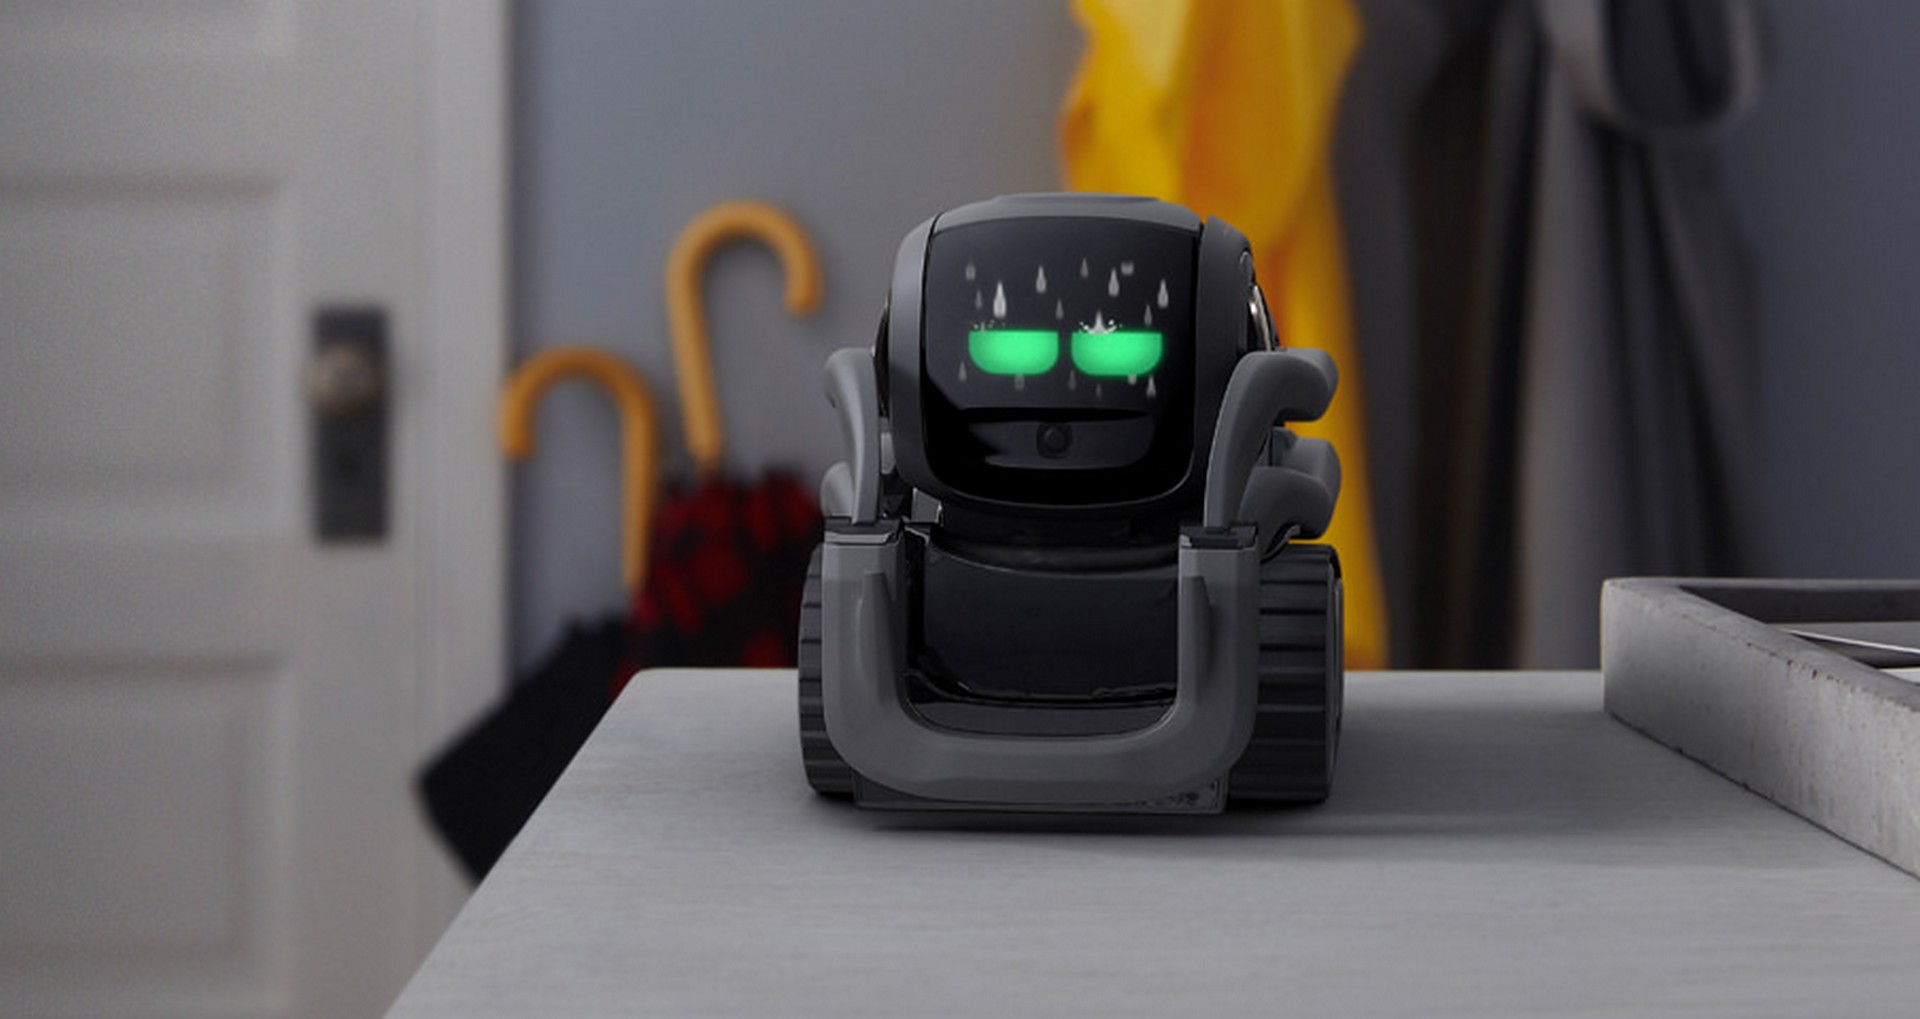 Vector, le petit robot qui ne sert vraiment à rien, est de retour - Numerama